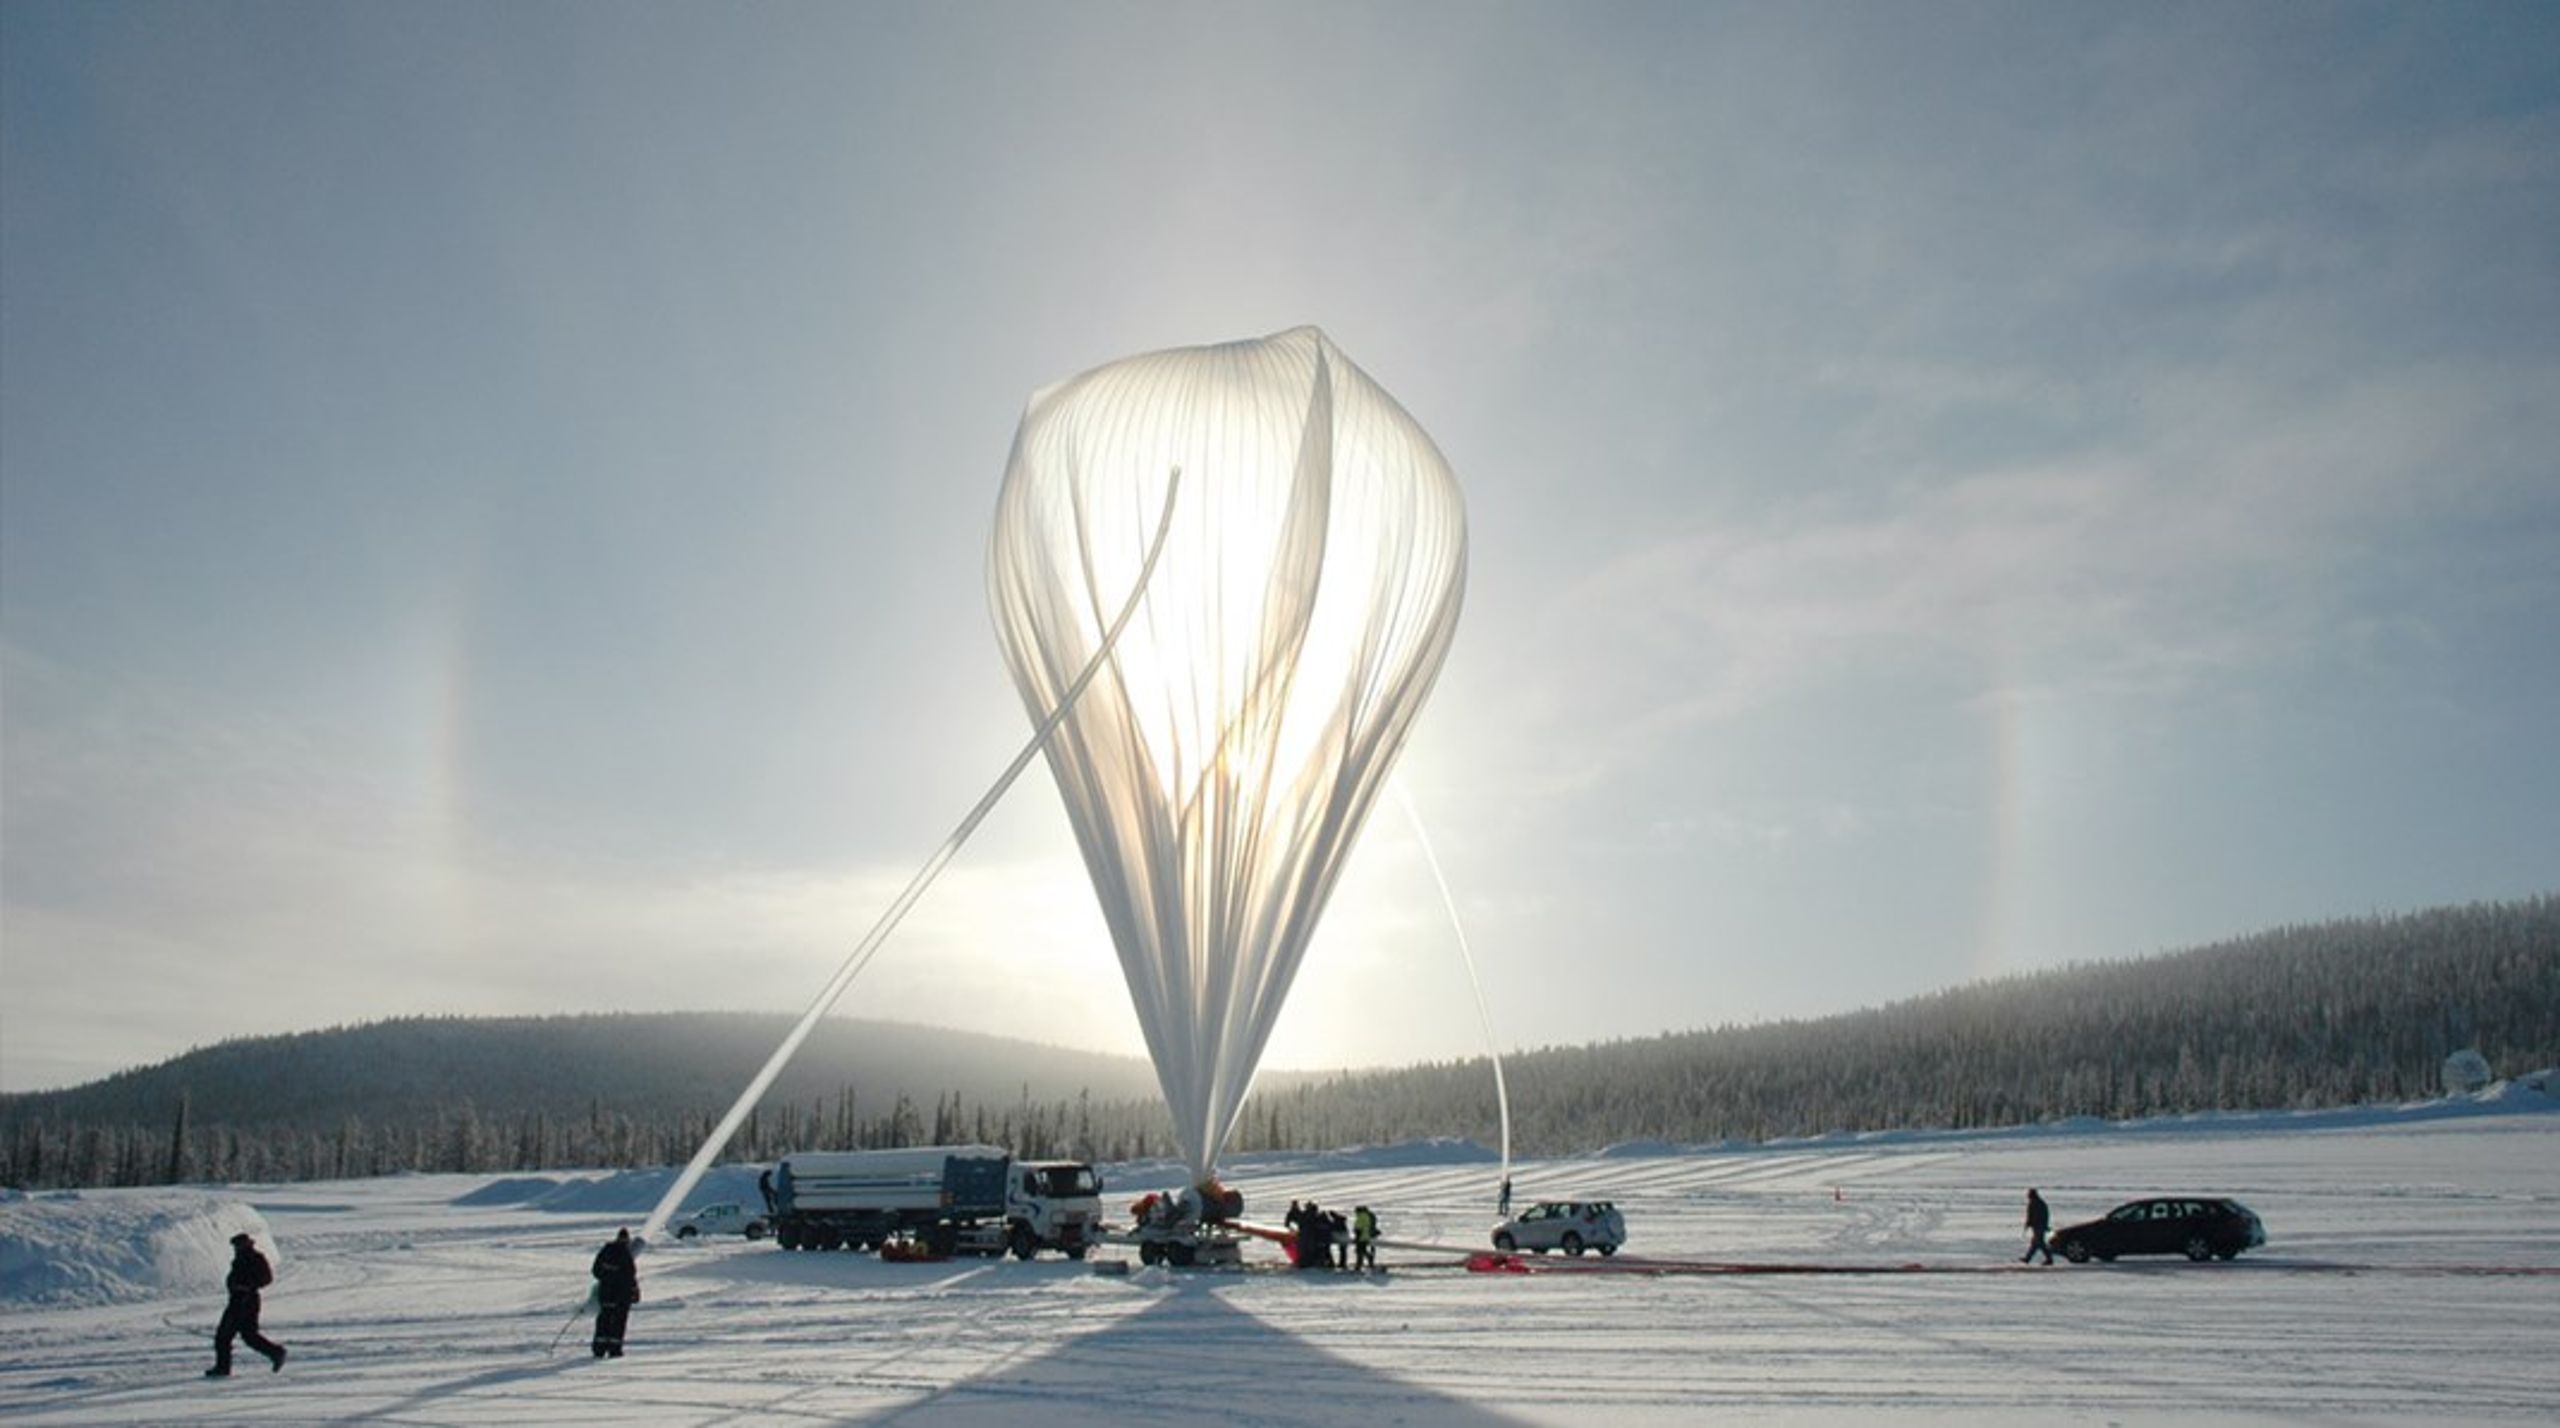 En nordsvensk alliance af ngo’er og samere fik i sommer forhindret denne prøveballon i at blive sendt 20 kilometer op over den laplandske
landjord for at sprede kalkstøv i et forsøg på at blokere solens stråler. Det amerikanske forskningshold bag forsøget vil sandsynligvis prøve
igen i 2022.